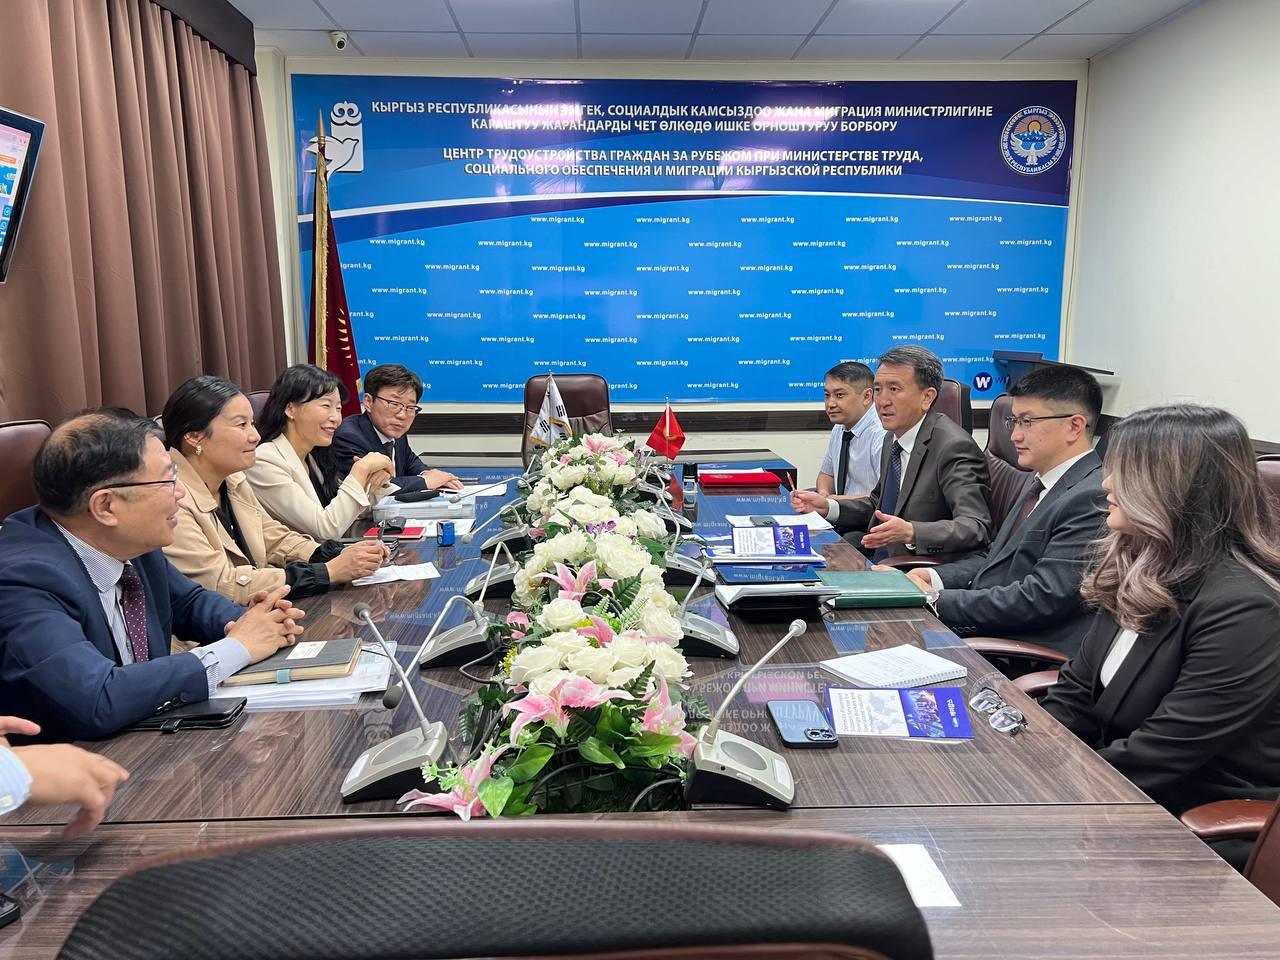 Центр трудоустройства граждан за рубежом при Министерстве труда, социального обеспечения и миграции Кыргызской Республики объявляет о подписании Соглашения о сотрудничестве с ведущими корейскими компаниями